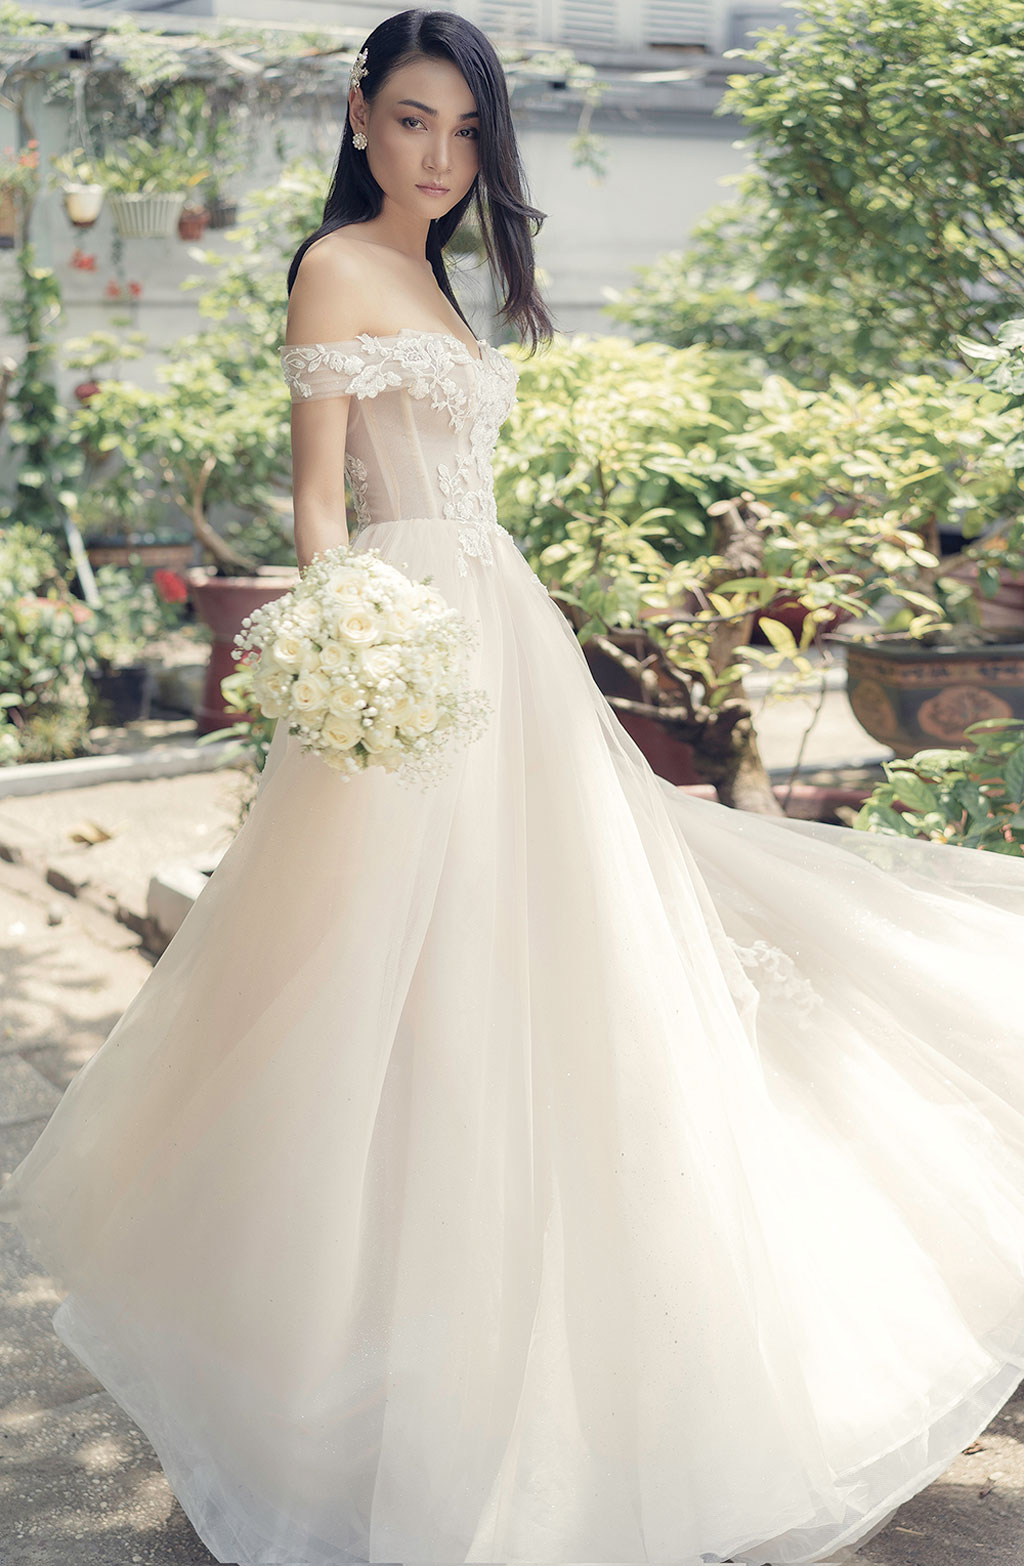 Người mẫu Thùy Trang đẹp lạnh lùng trong váy cô dâu5